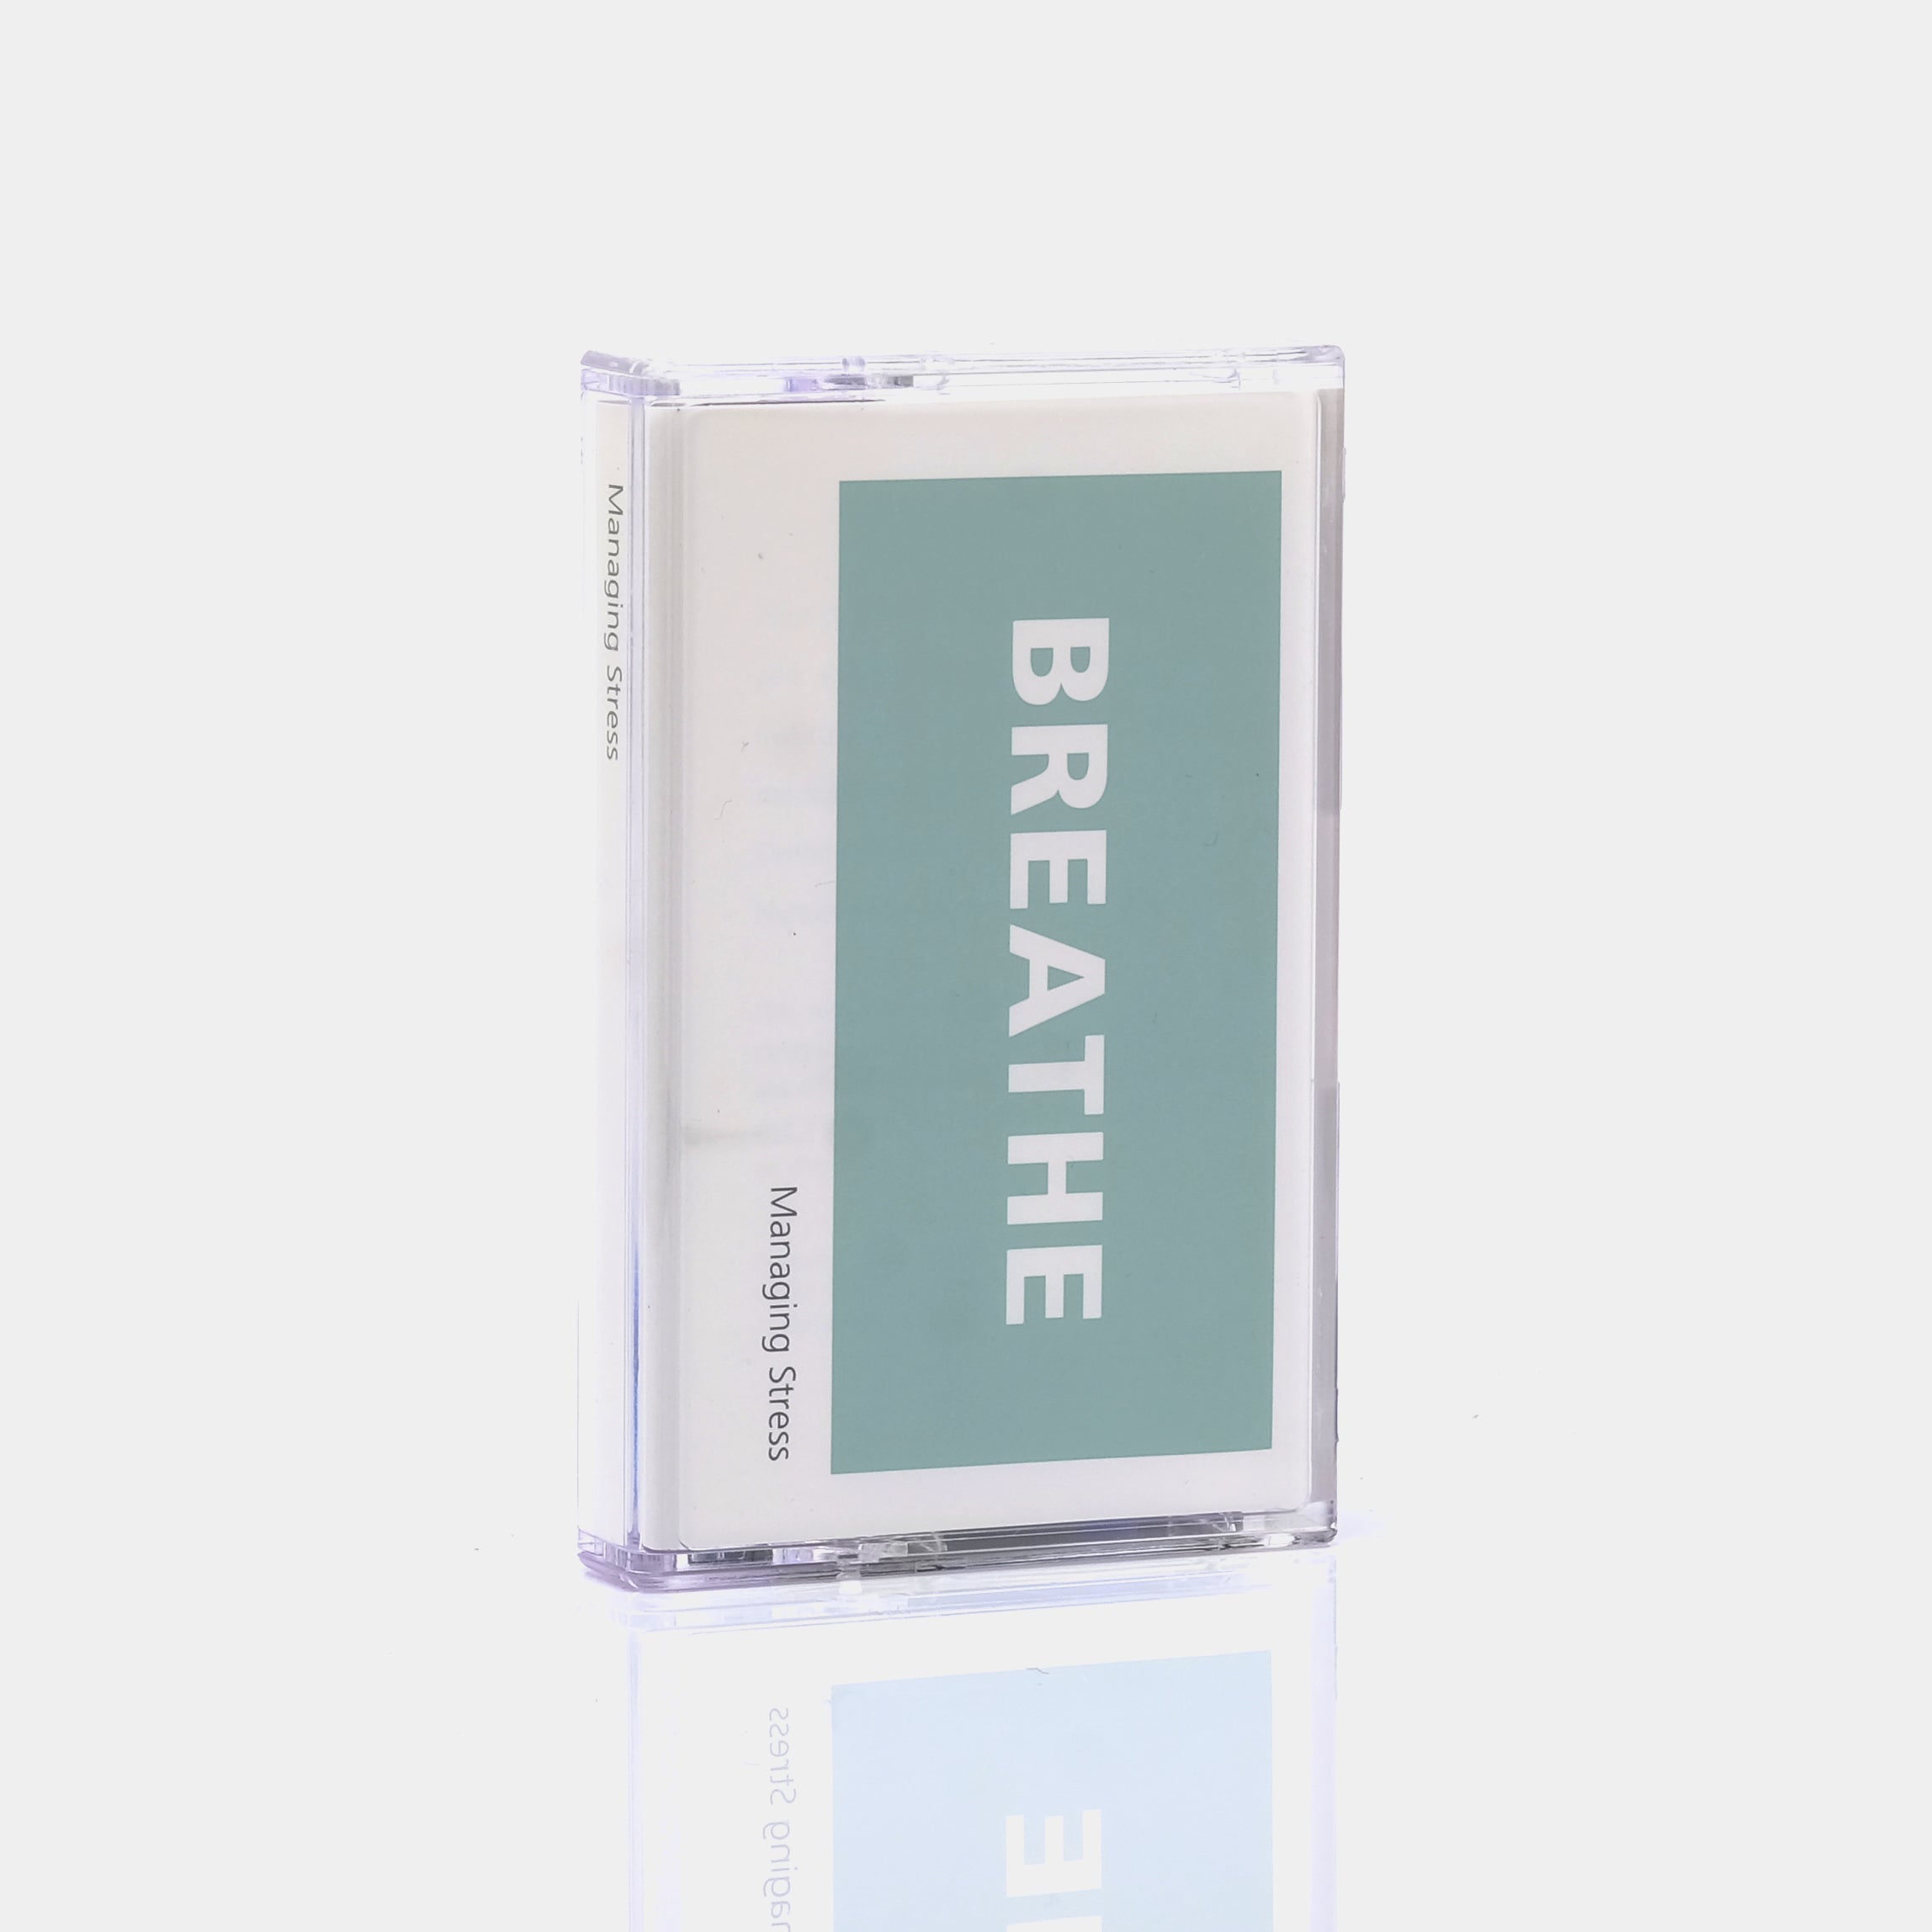 Breathe: Managing Stress Cassette Tape